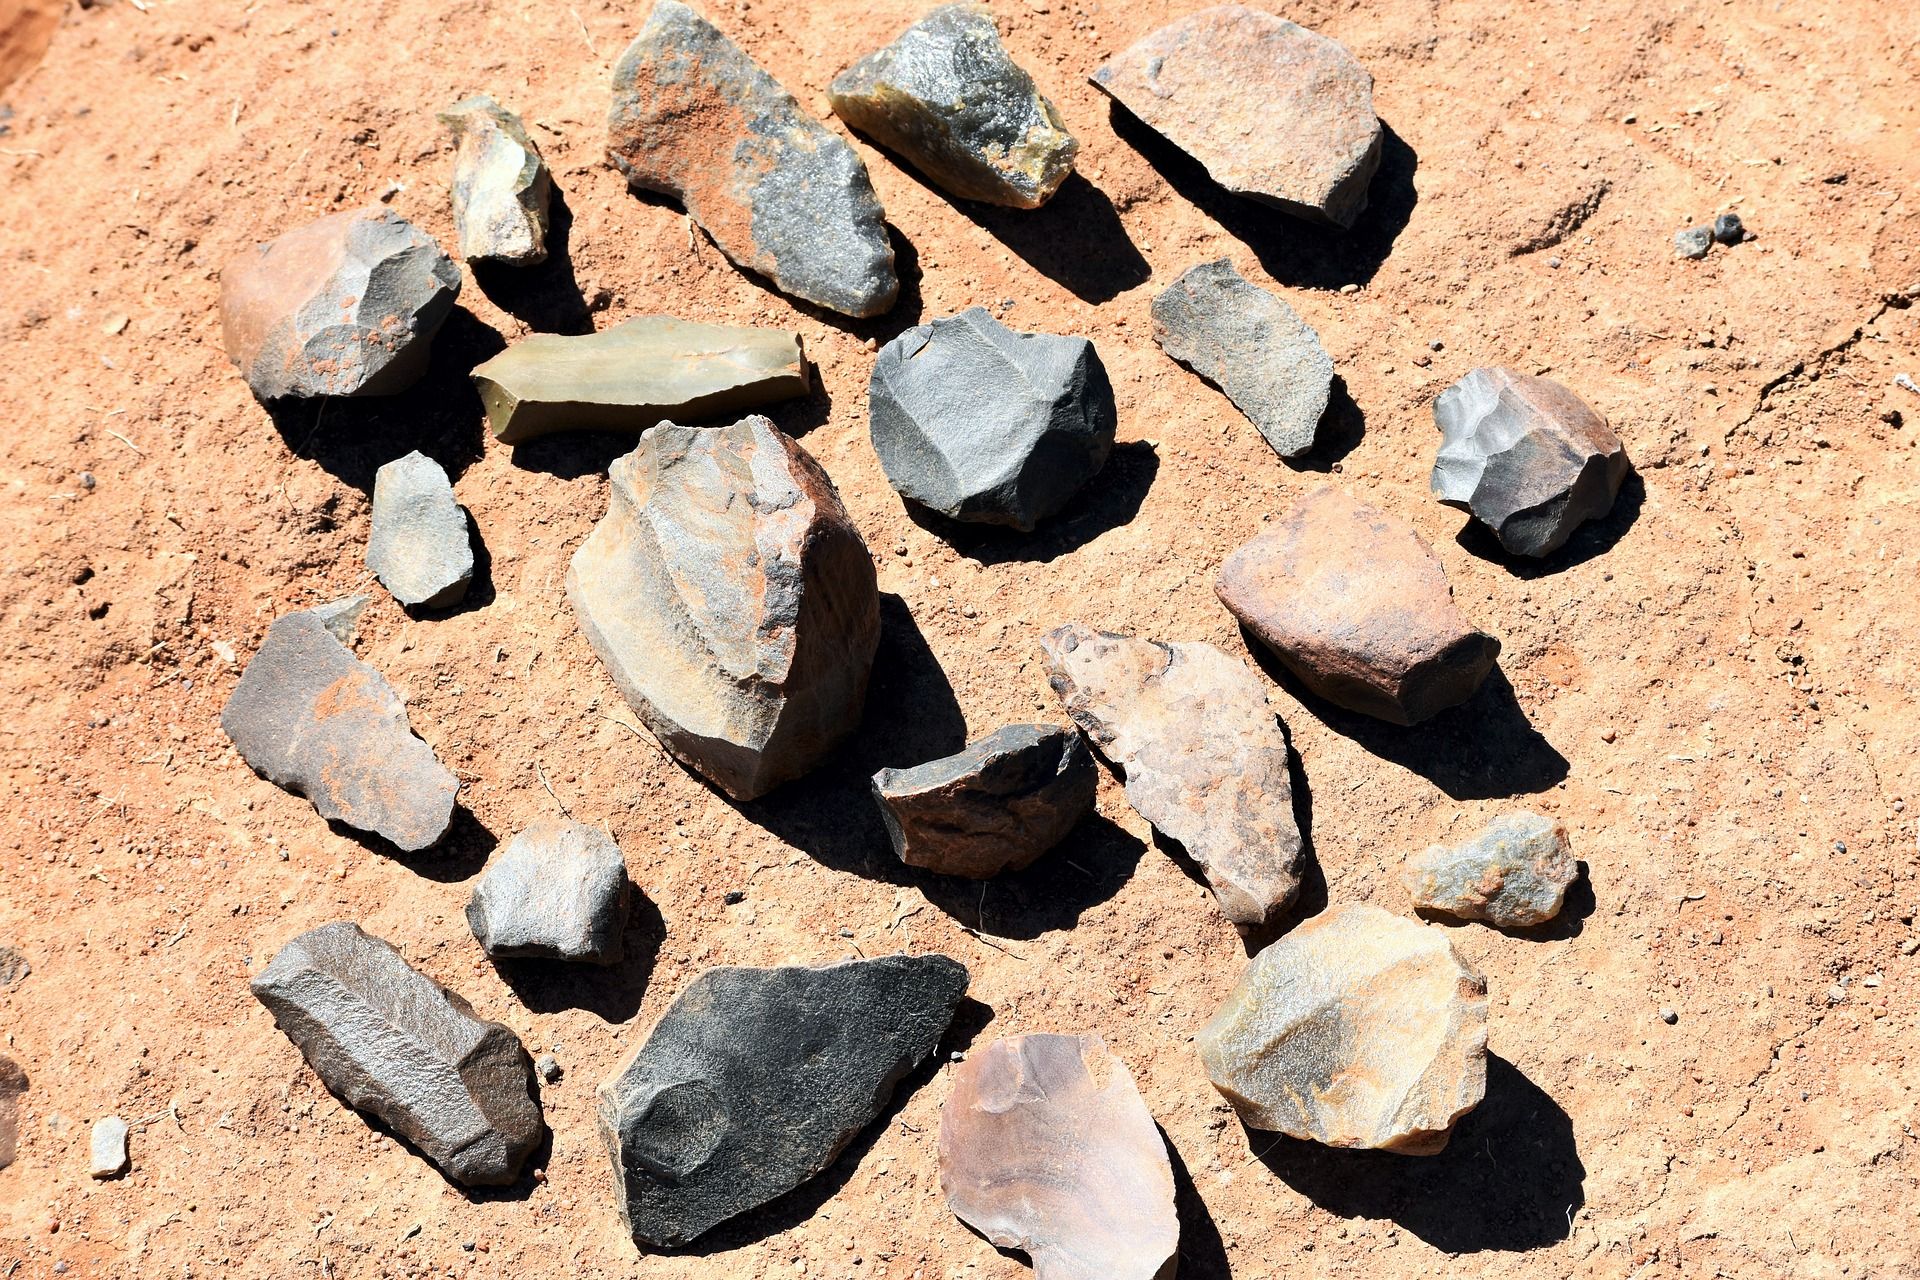 stone tools, early world history